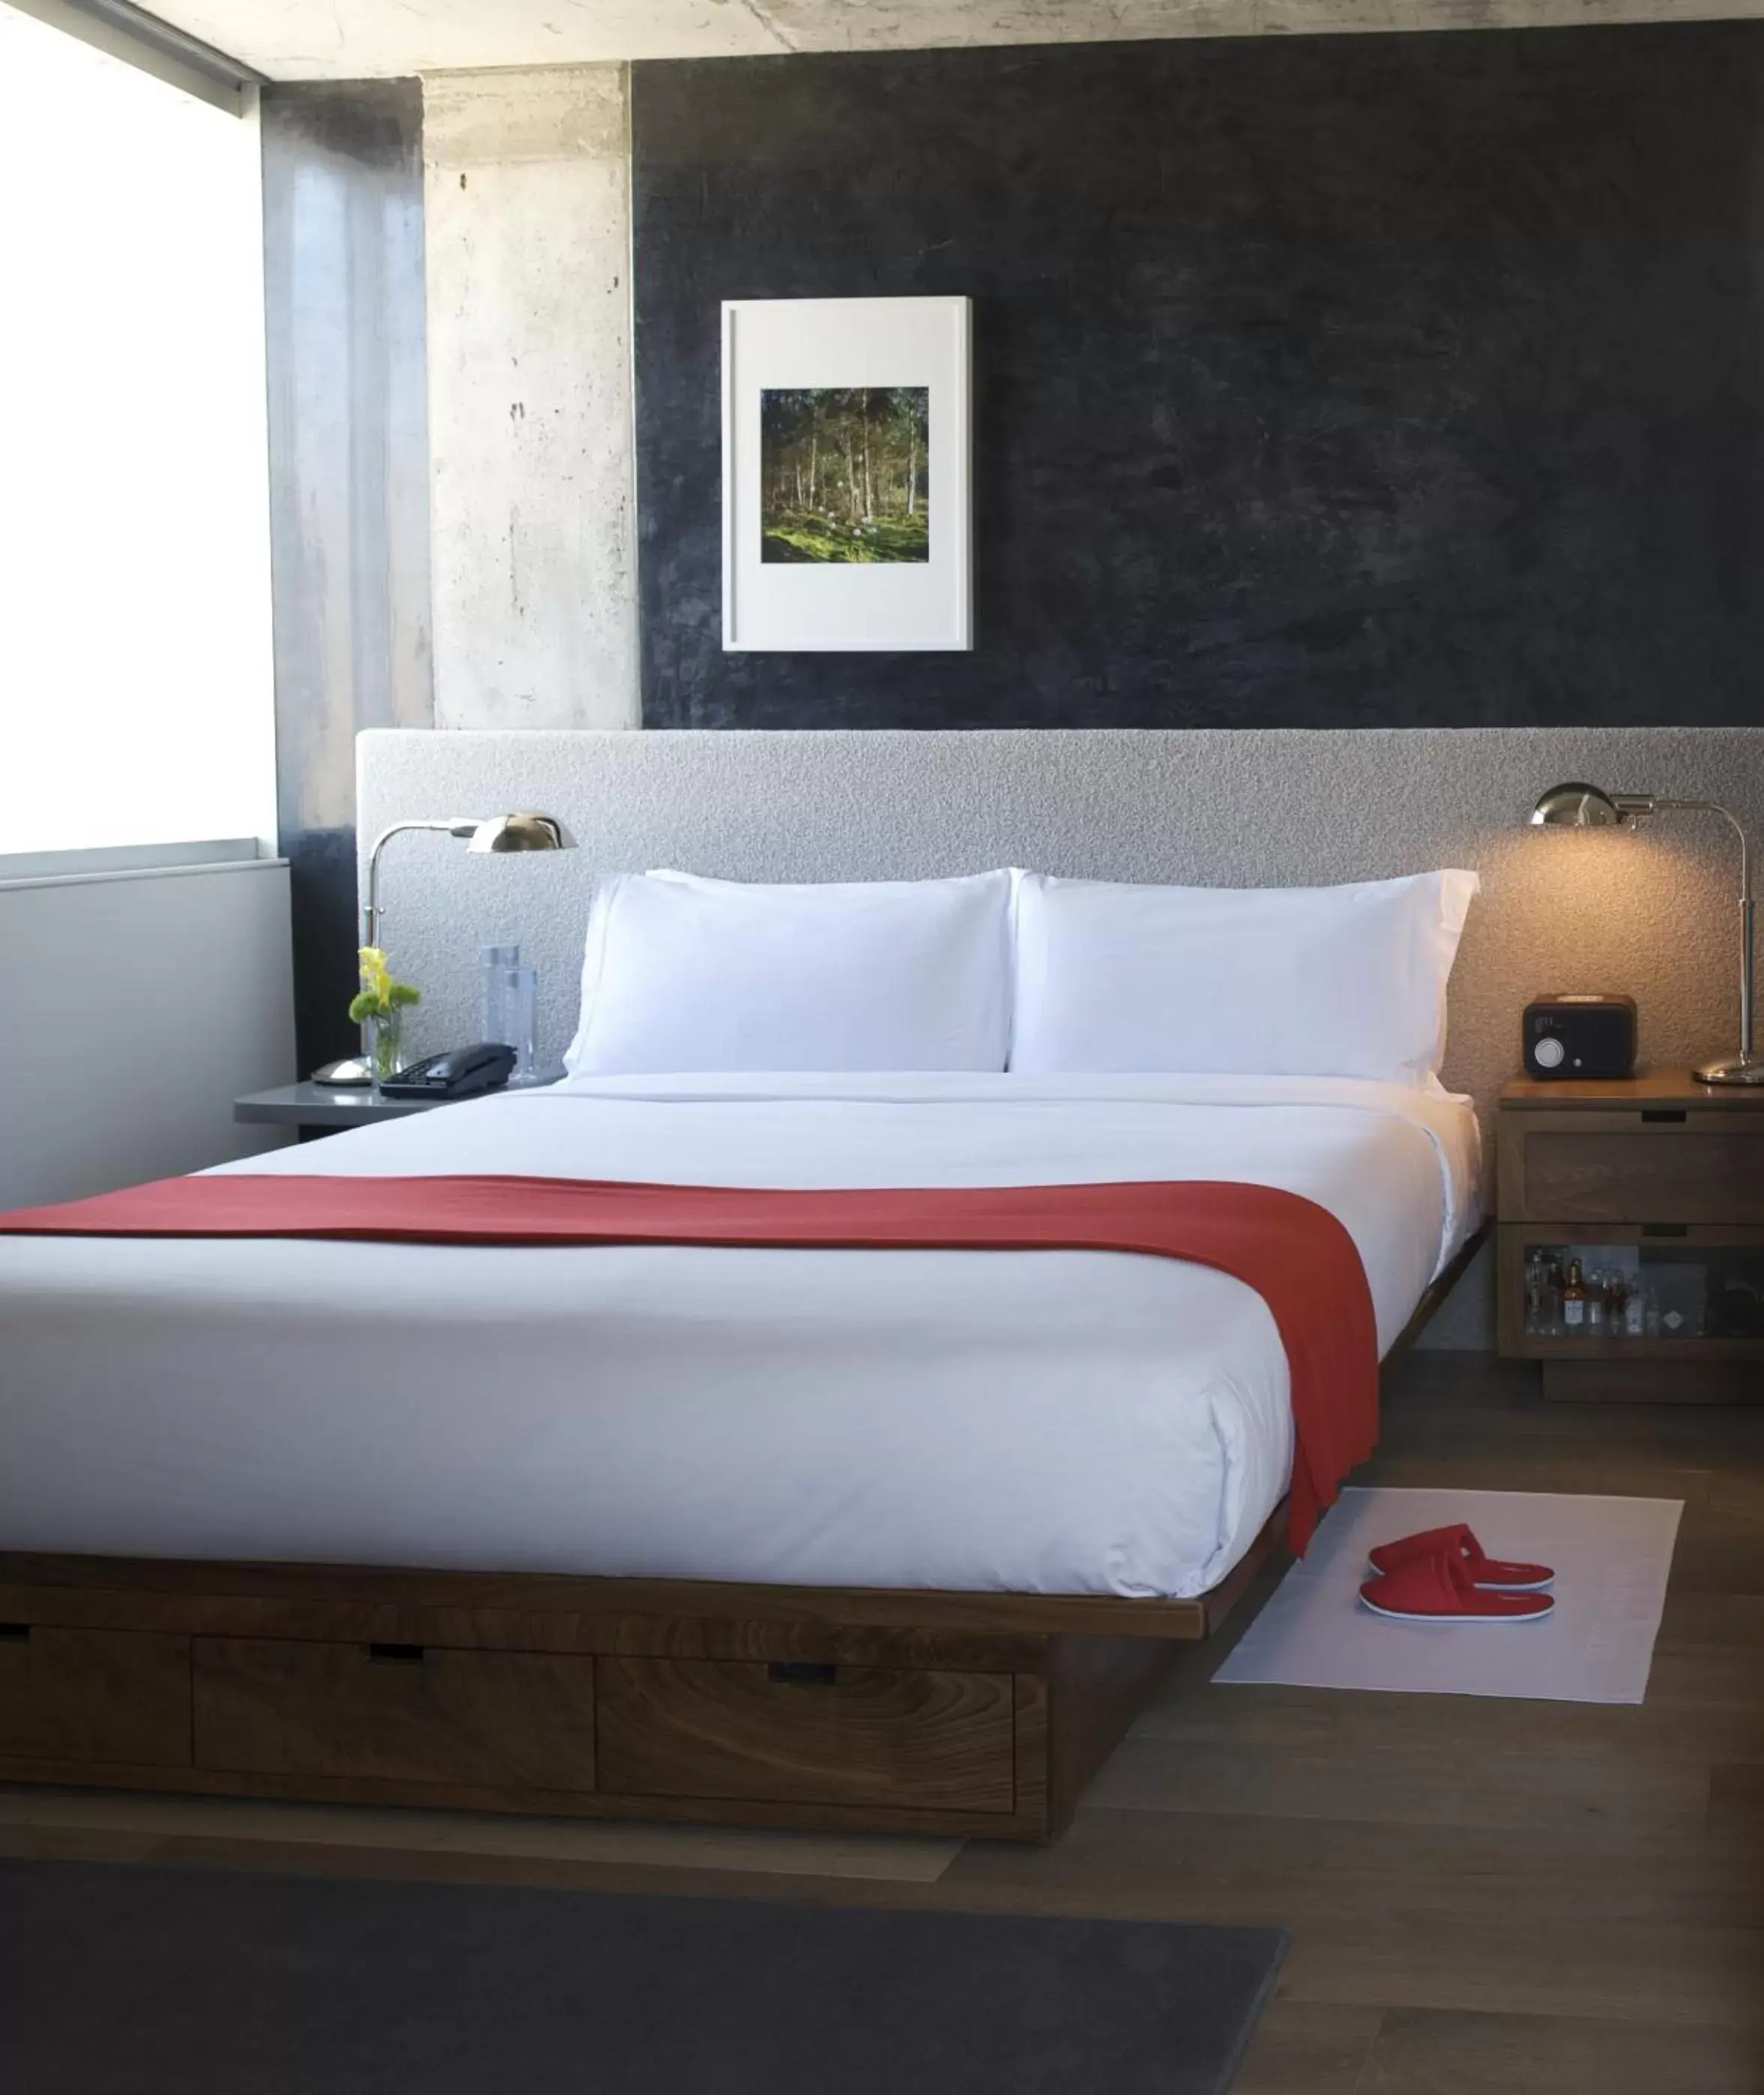 Bedroom, Bed in Nolitan Hotel SoHo - New York